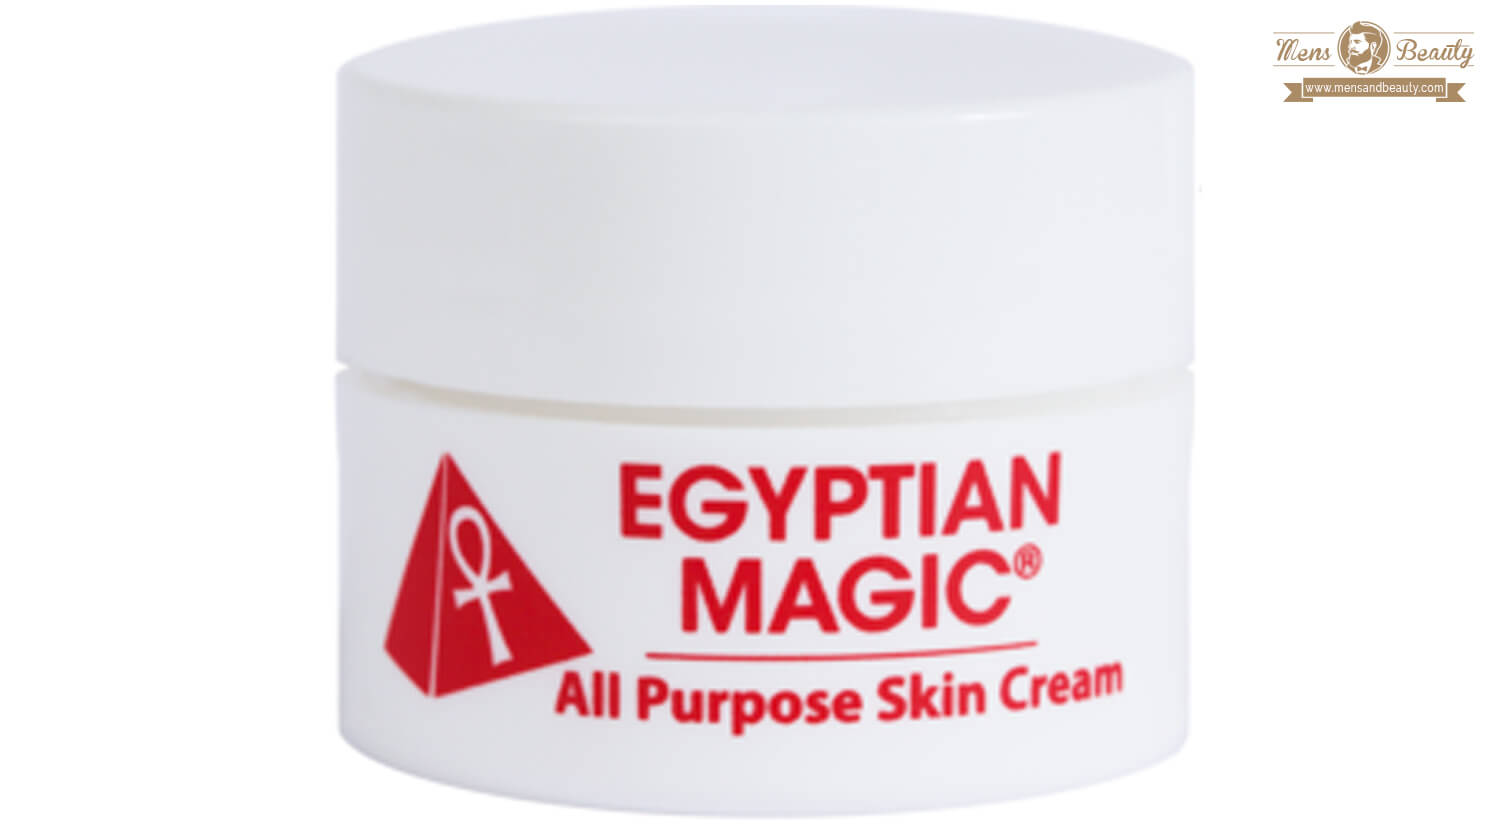 mejores productos belleza hombre cosmetica natural masculina crema hidratante facial egyptian magic all purpose skin cream